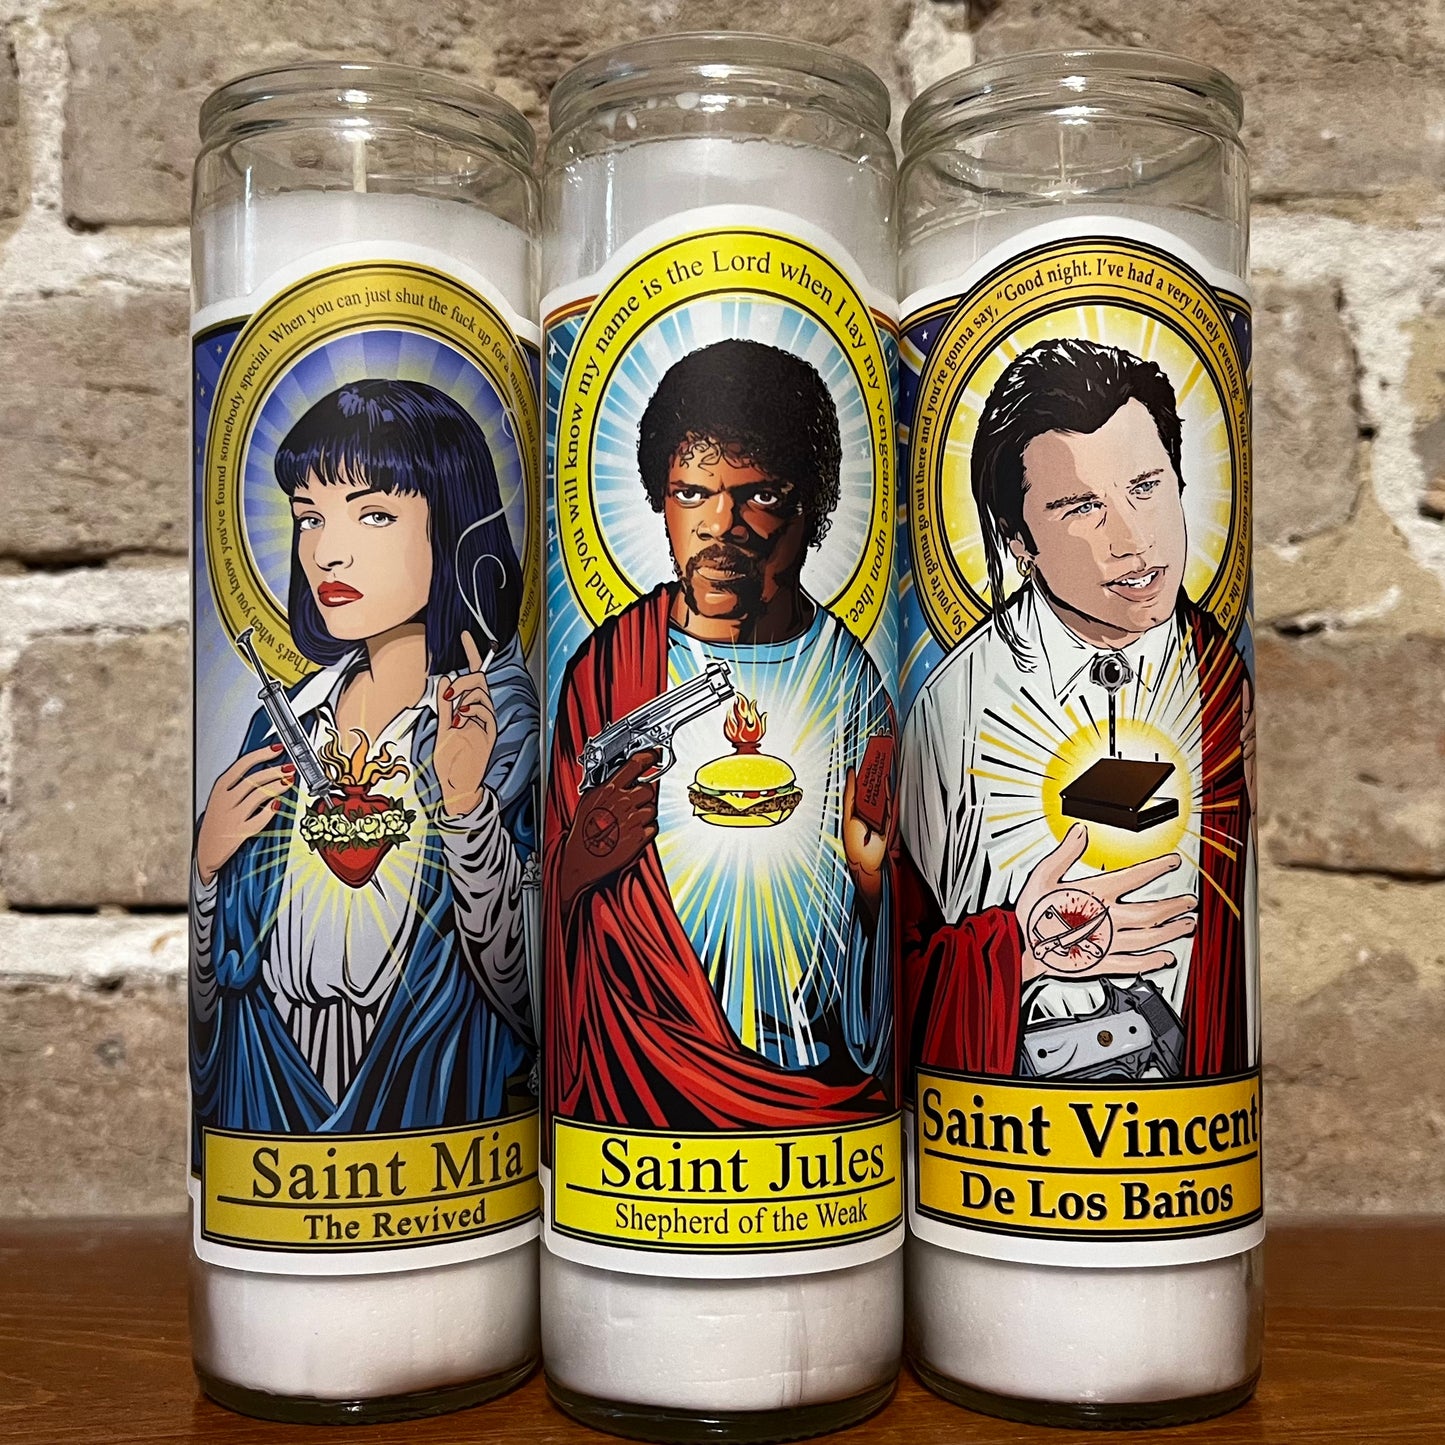 Saint Mia The Revived Candle Cleaverandblade.com